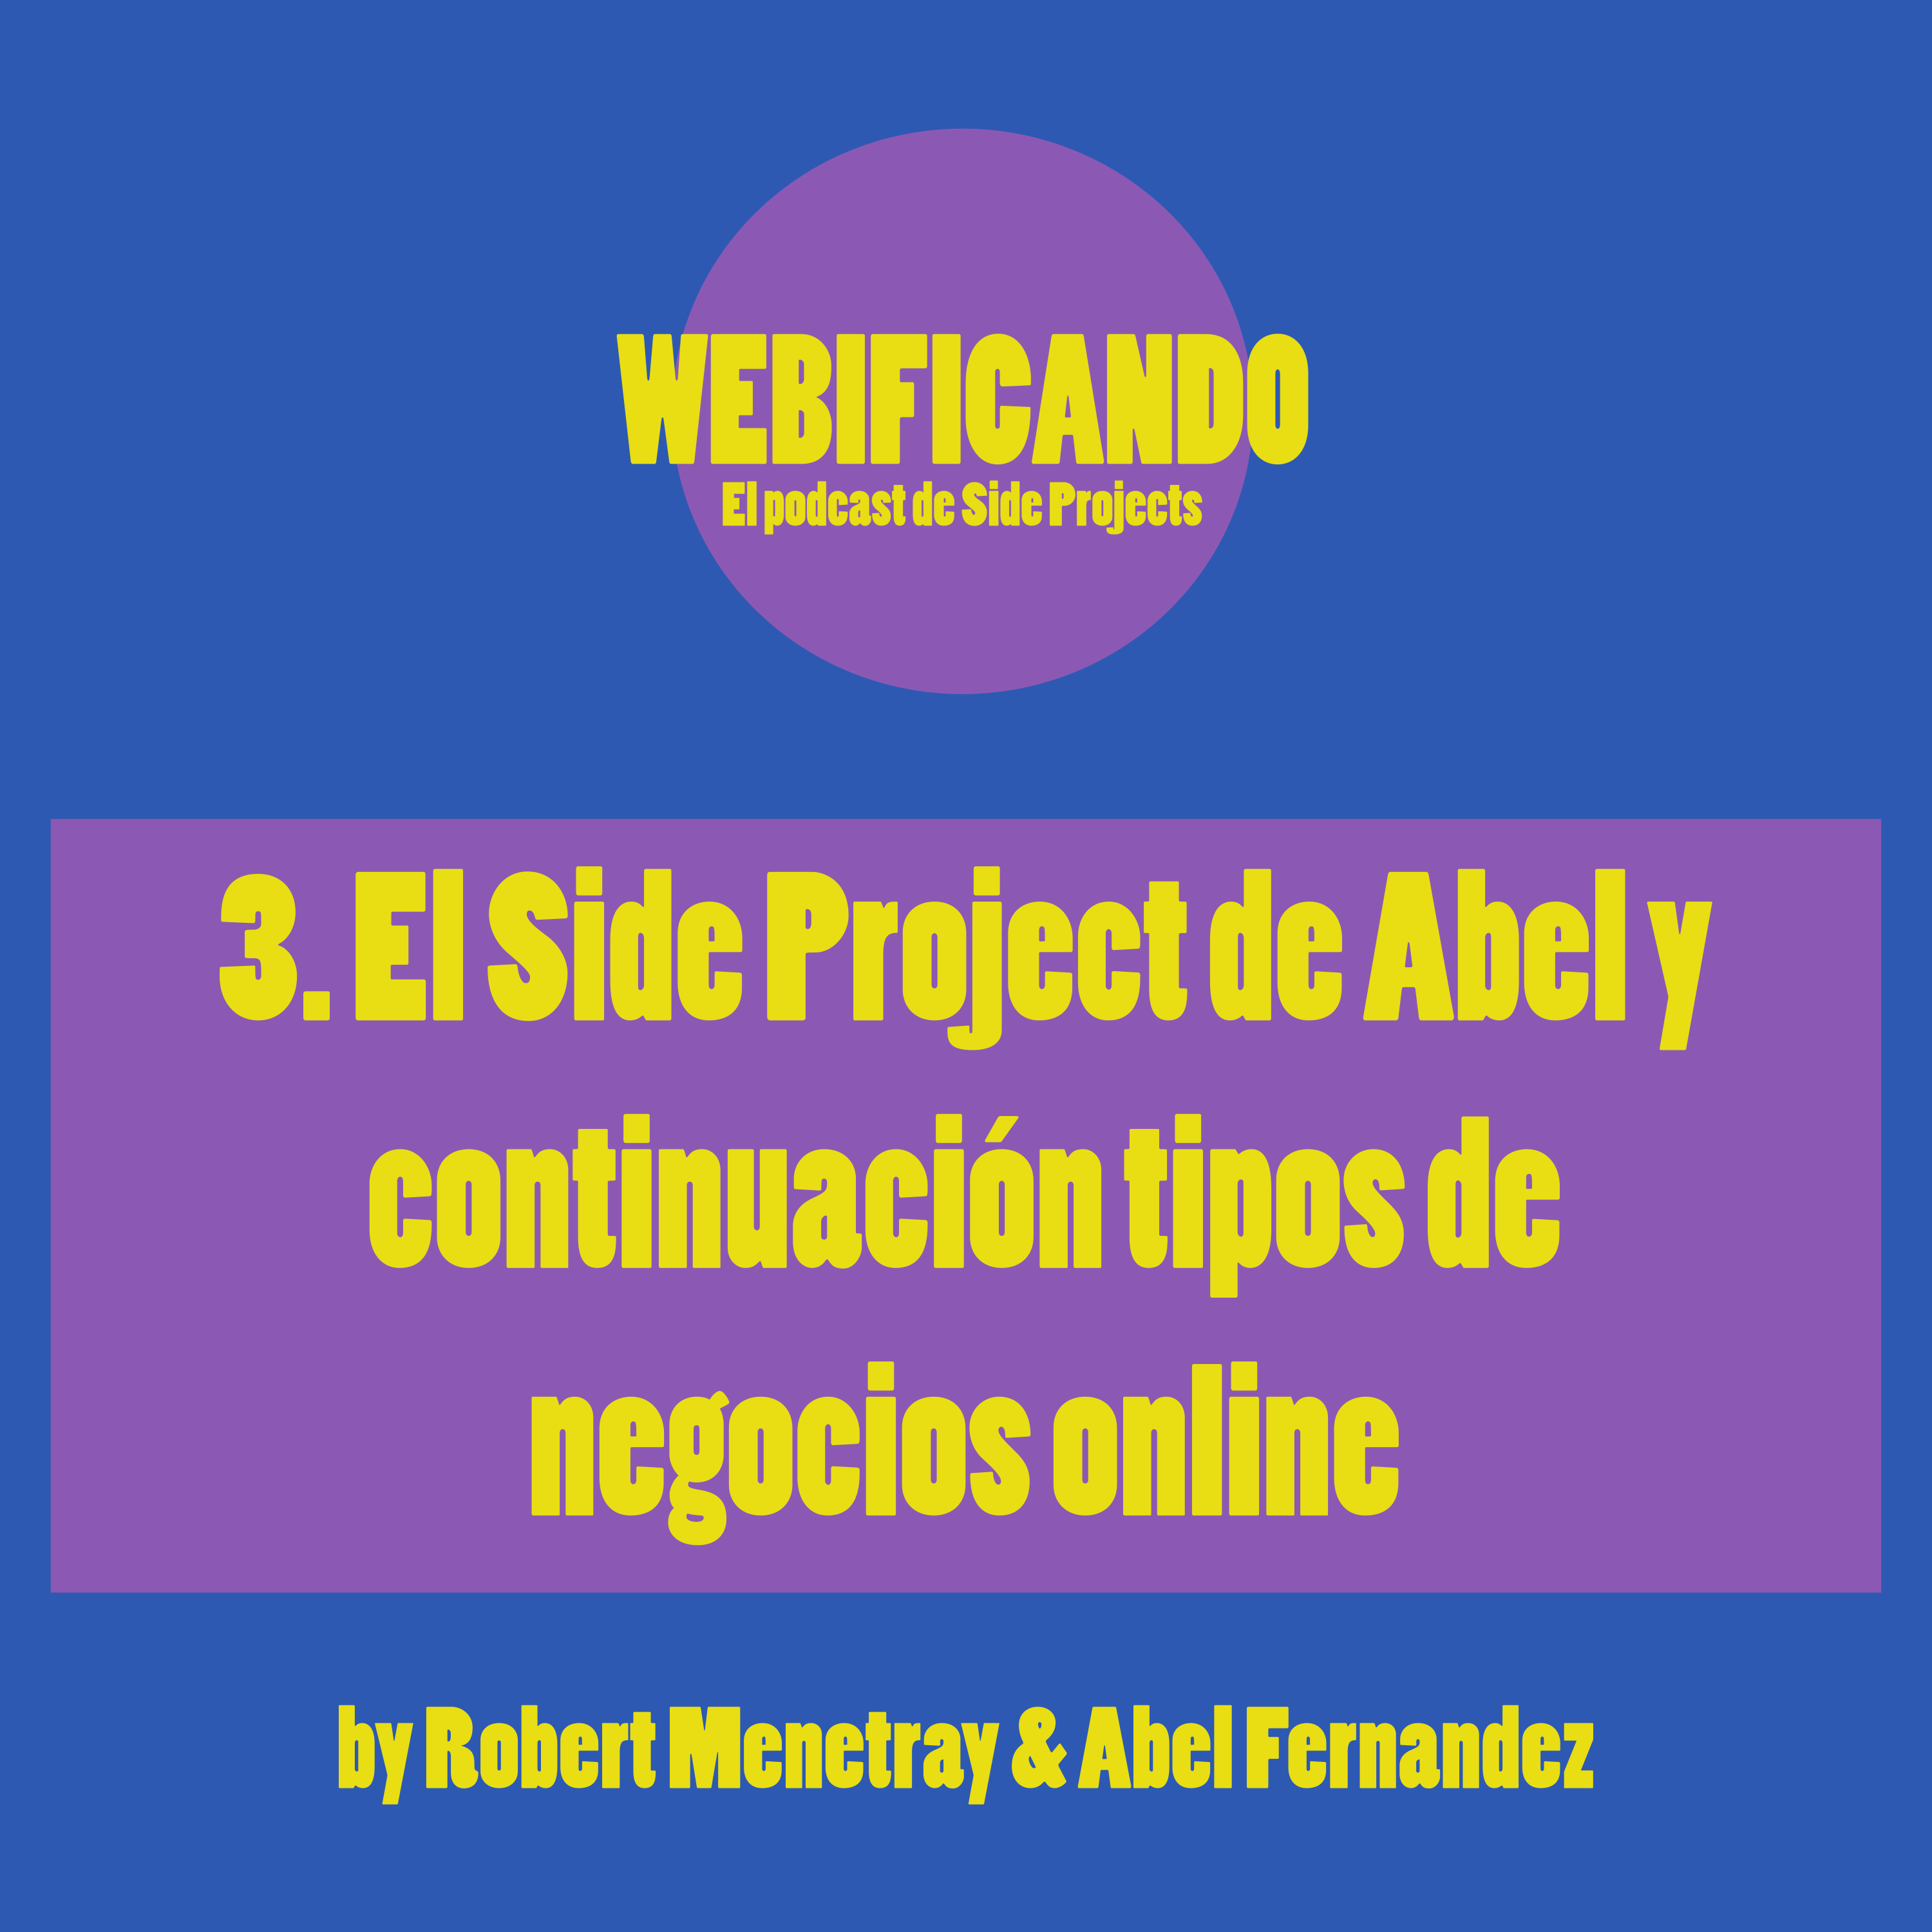 3. El Side Project de Abel y continuación tipos de negocios online